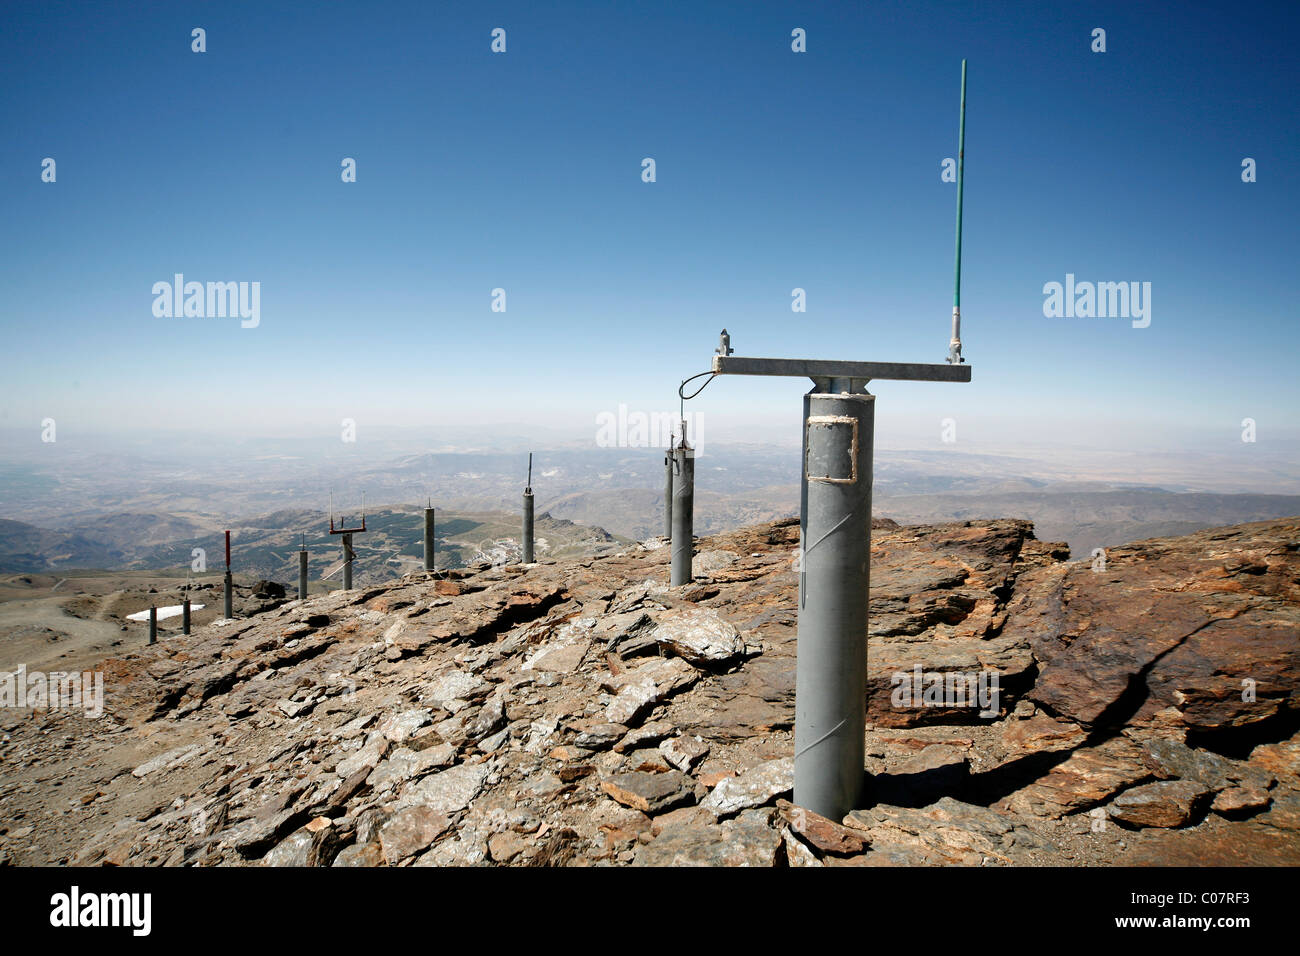 Les stations de surveillance, parc national sierra nevada, Pico del veleta, 3384m, Andalousie, sud de l'Espagne, Europe Banque D'Images